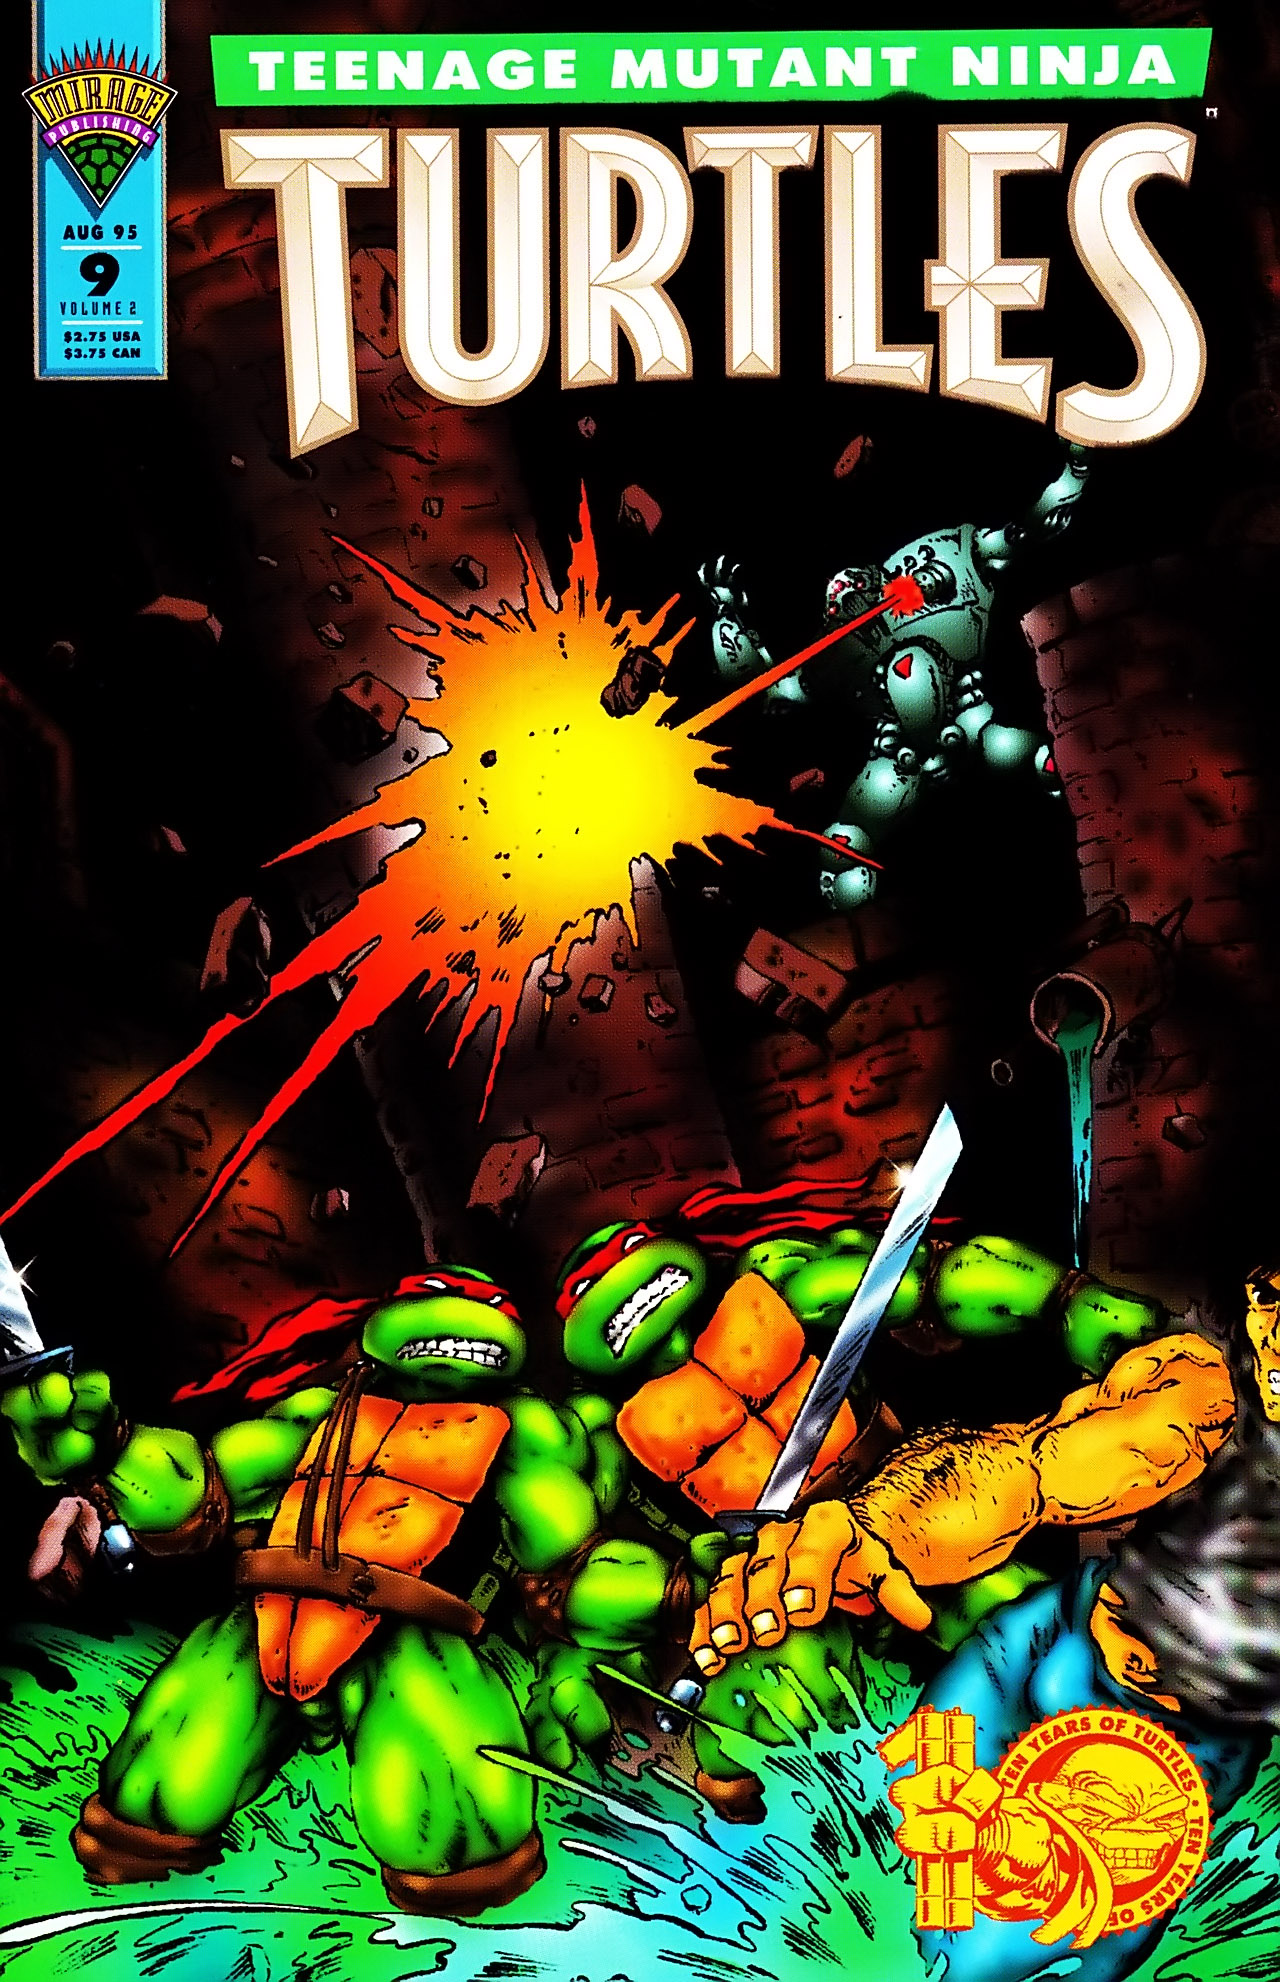 Teenage Mutant Ninja Turtles (1993) Issue #9 #9 - English 1